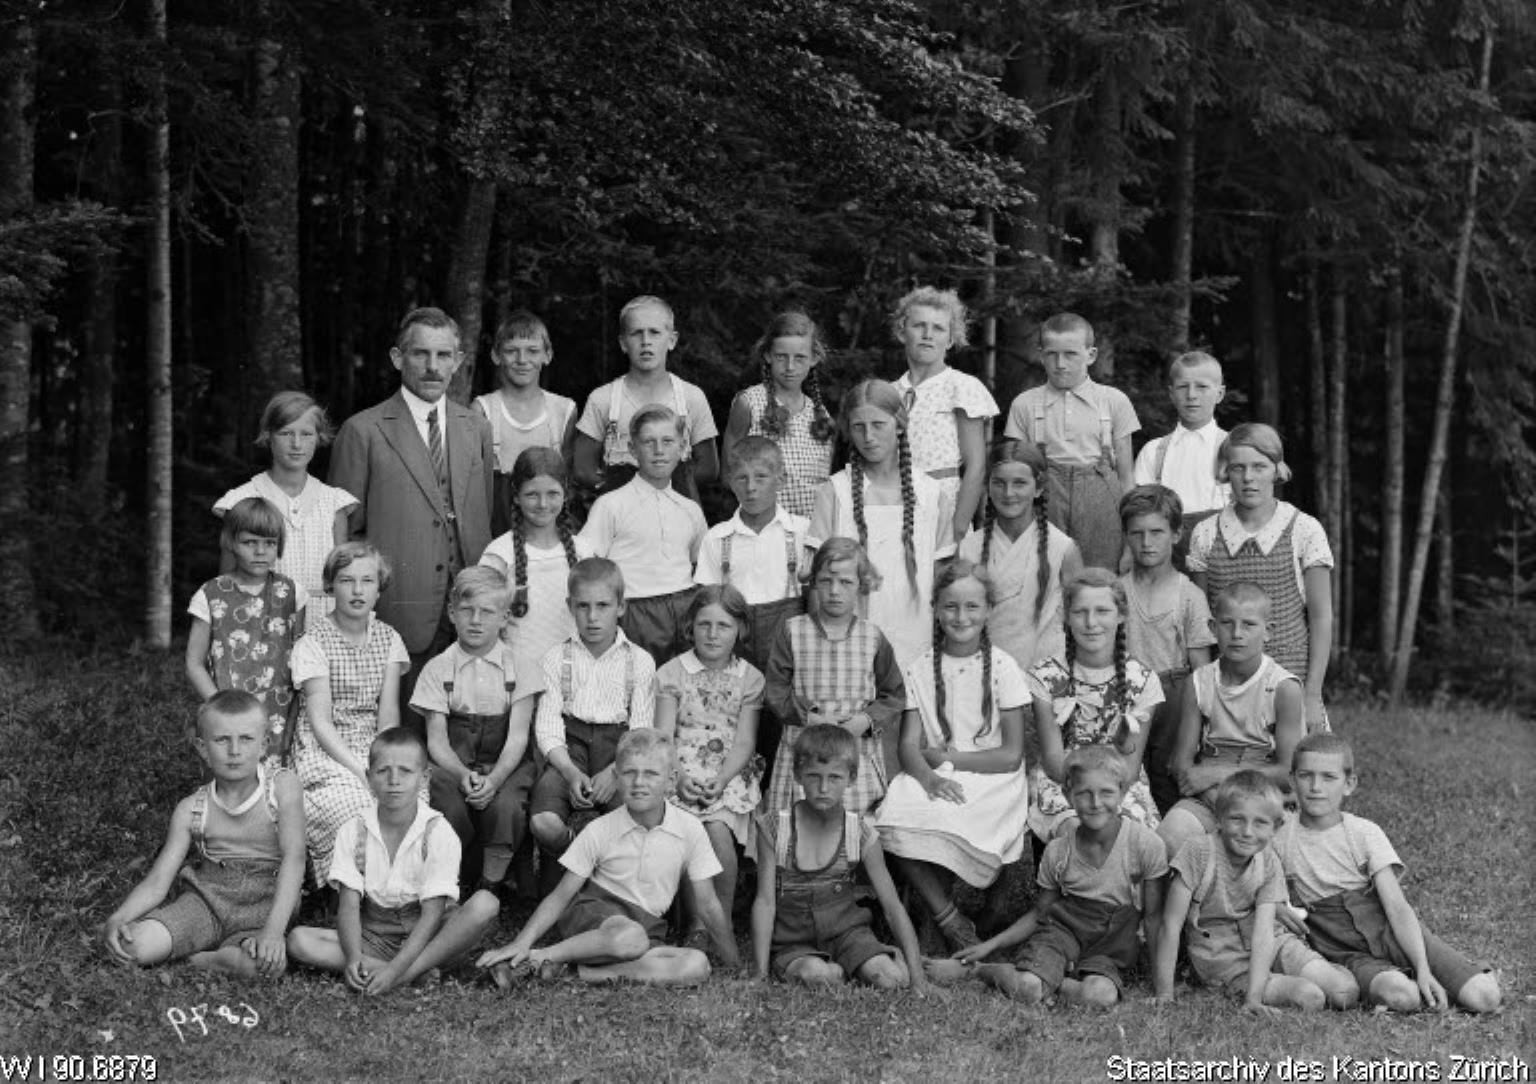 Primarschule Wappenswil, Lehrer Hans Hiestand (1889-1953), 1934